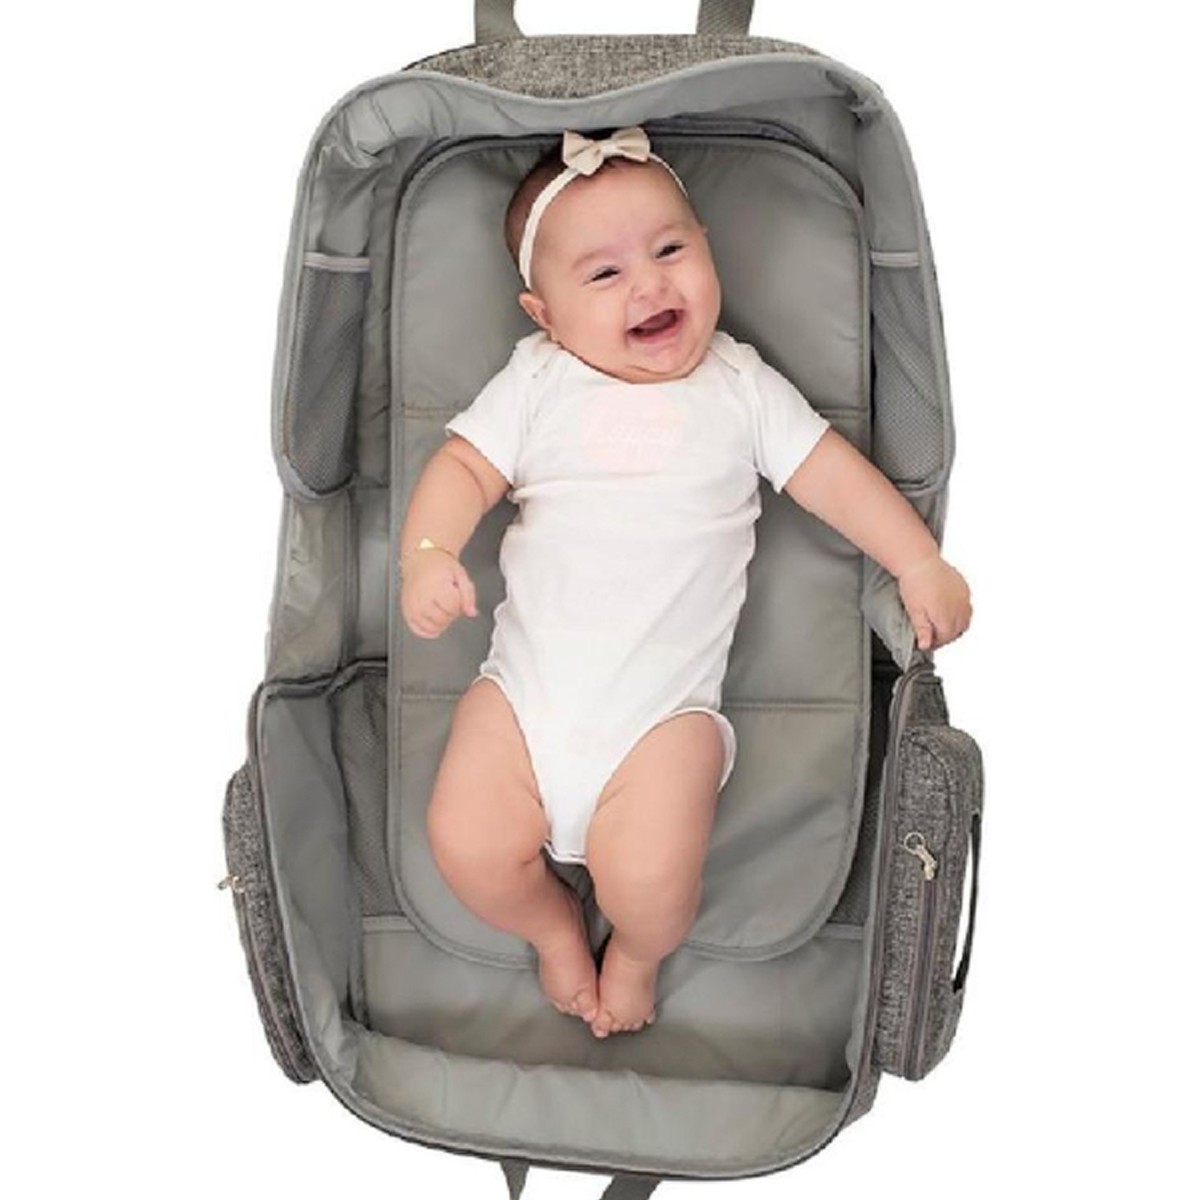 Bolsa Bercinho Maternidade Bebe Infantil Nest Diversos Compartimentos Cinza - Kababy